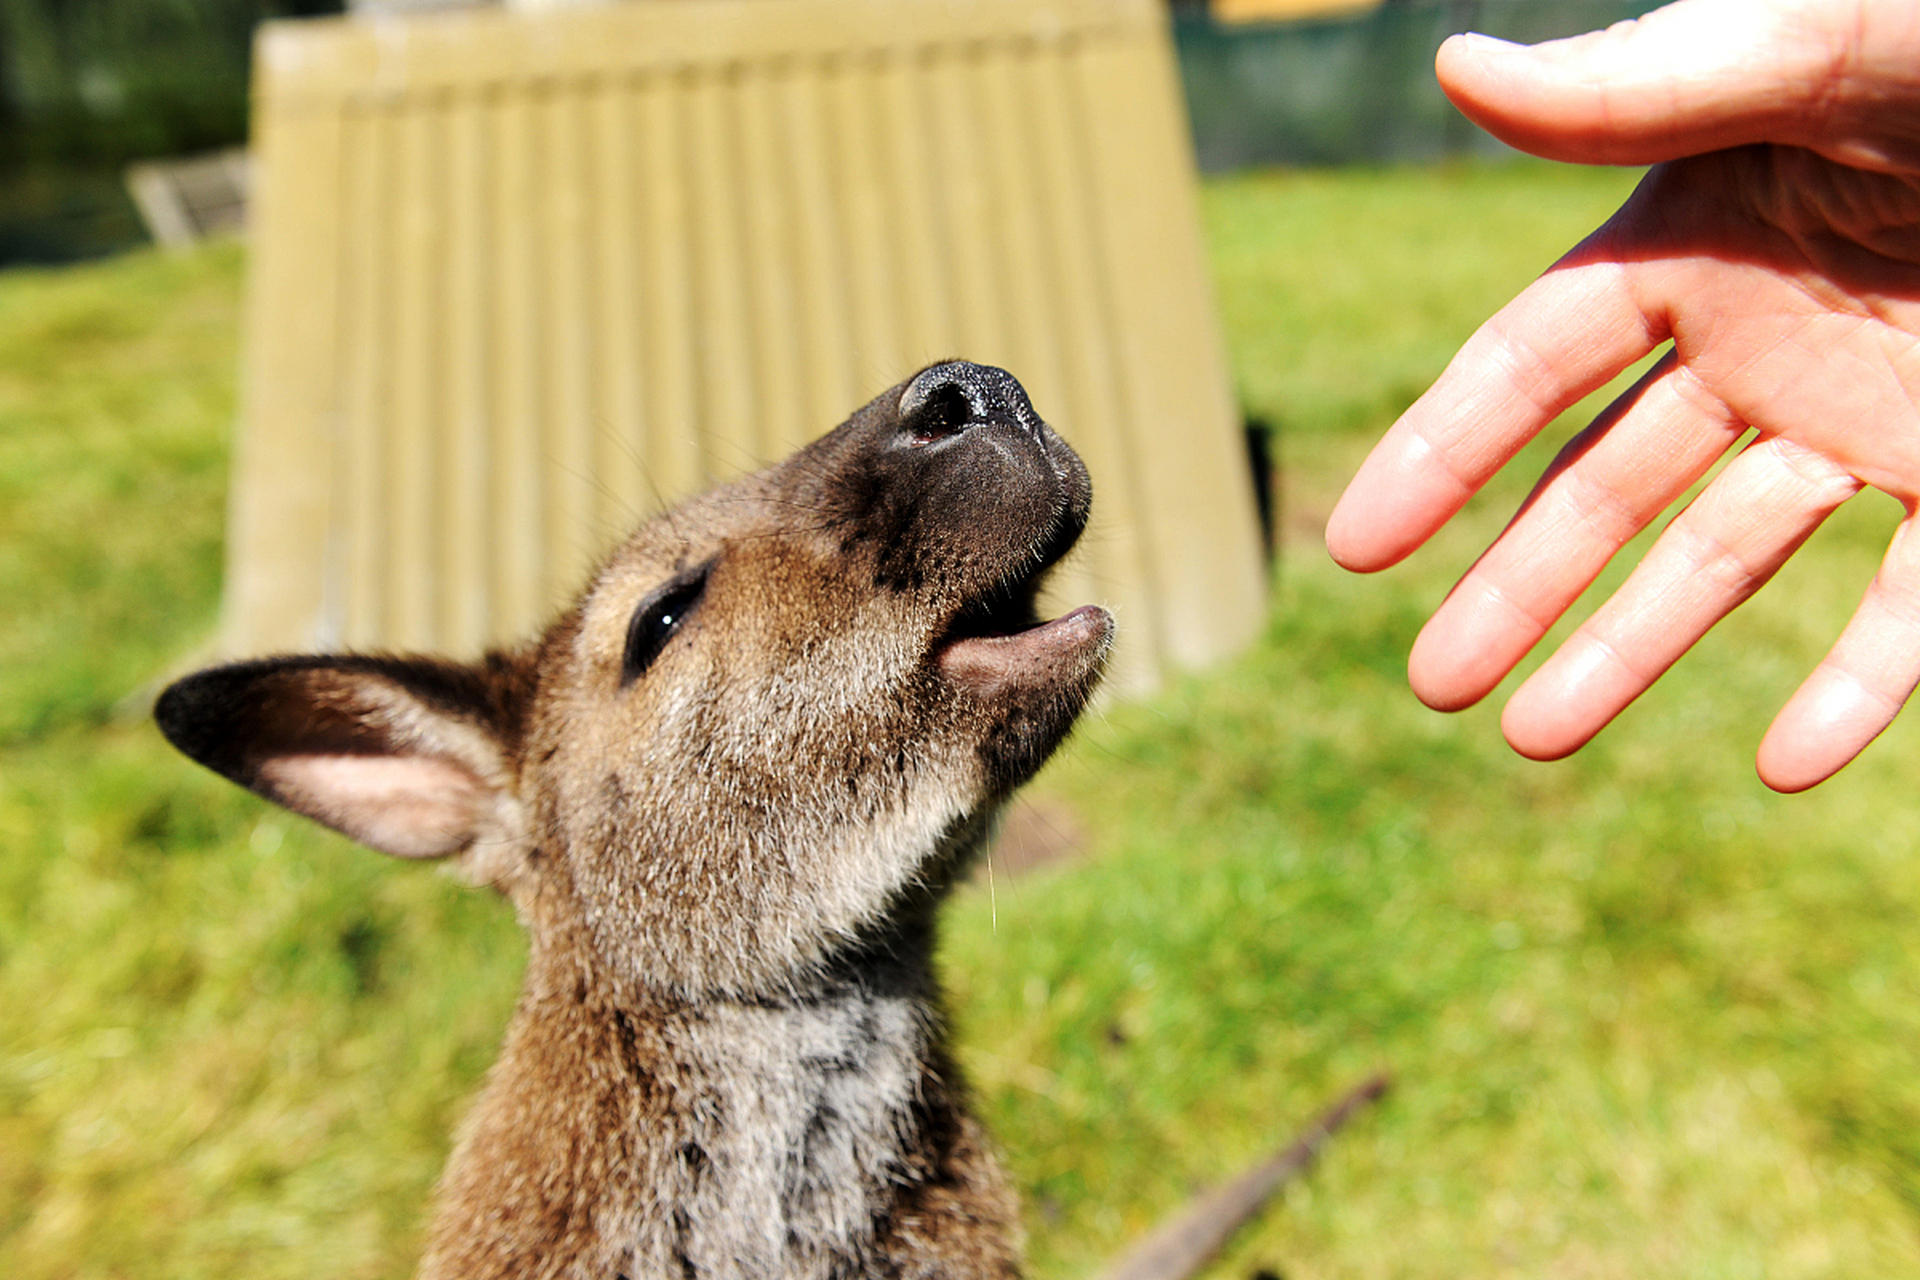 袋鼠是澳大利亚的特色动物,它们有着神奇跳跃能力,可爱的袋鼠宝宝在